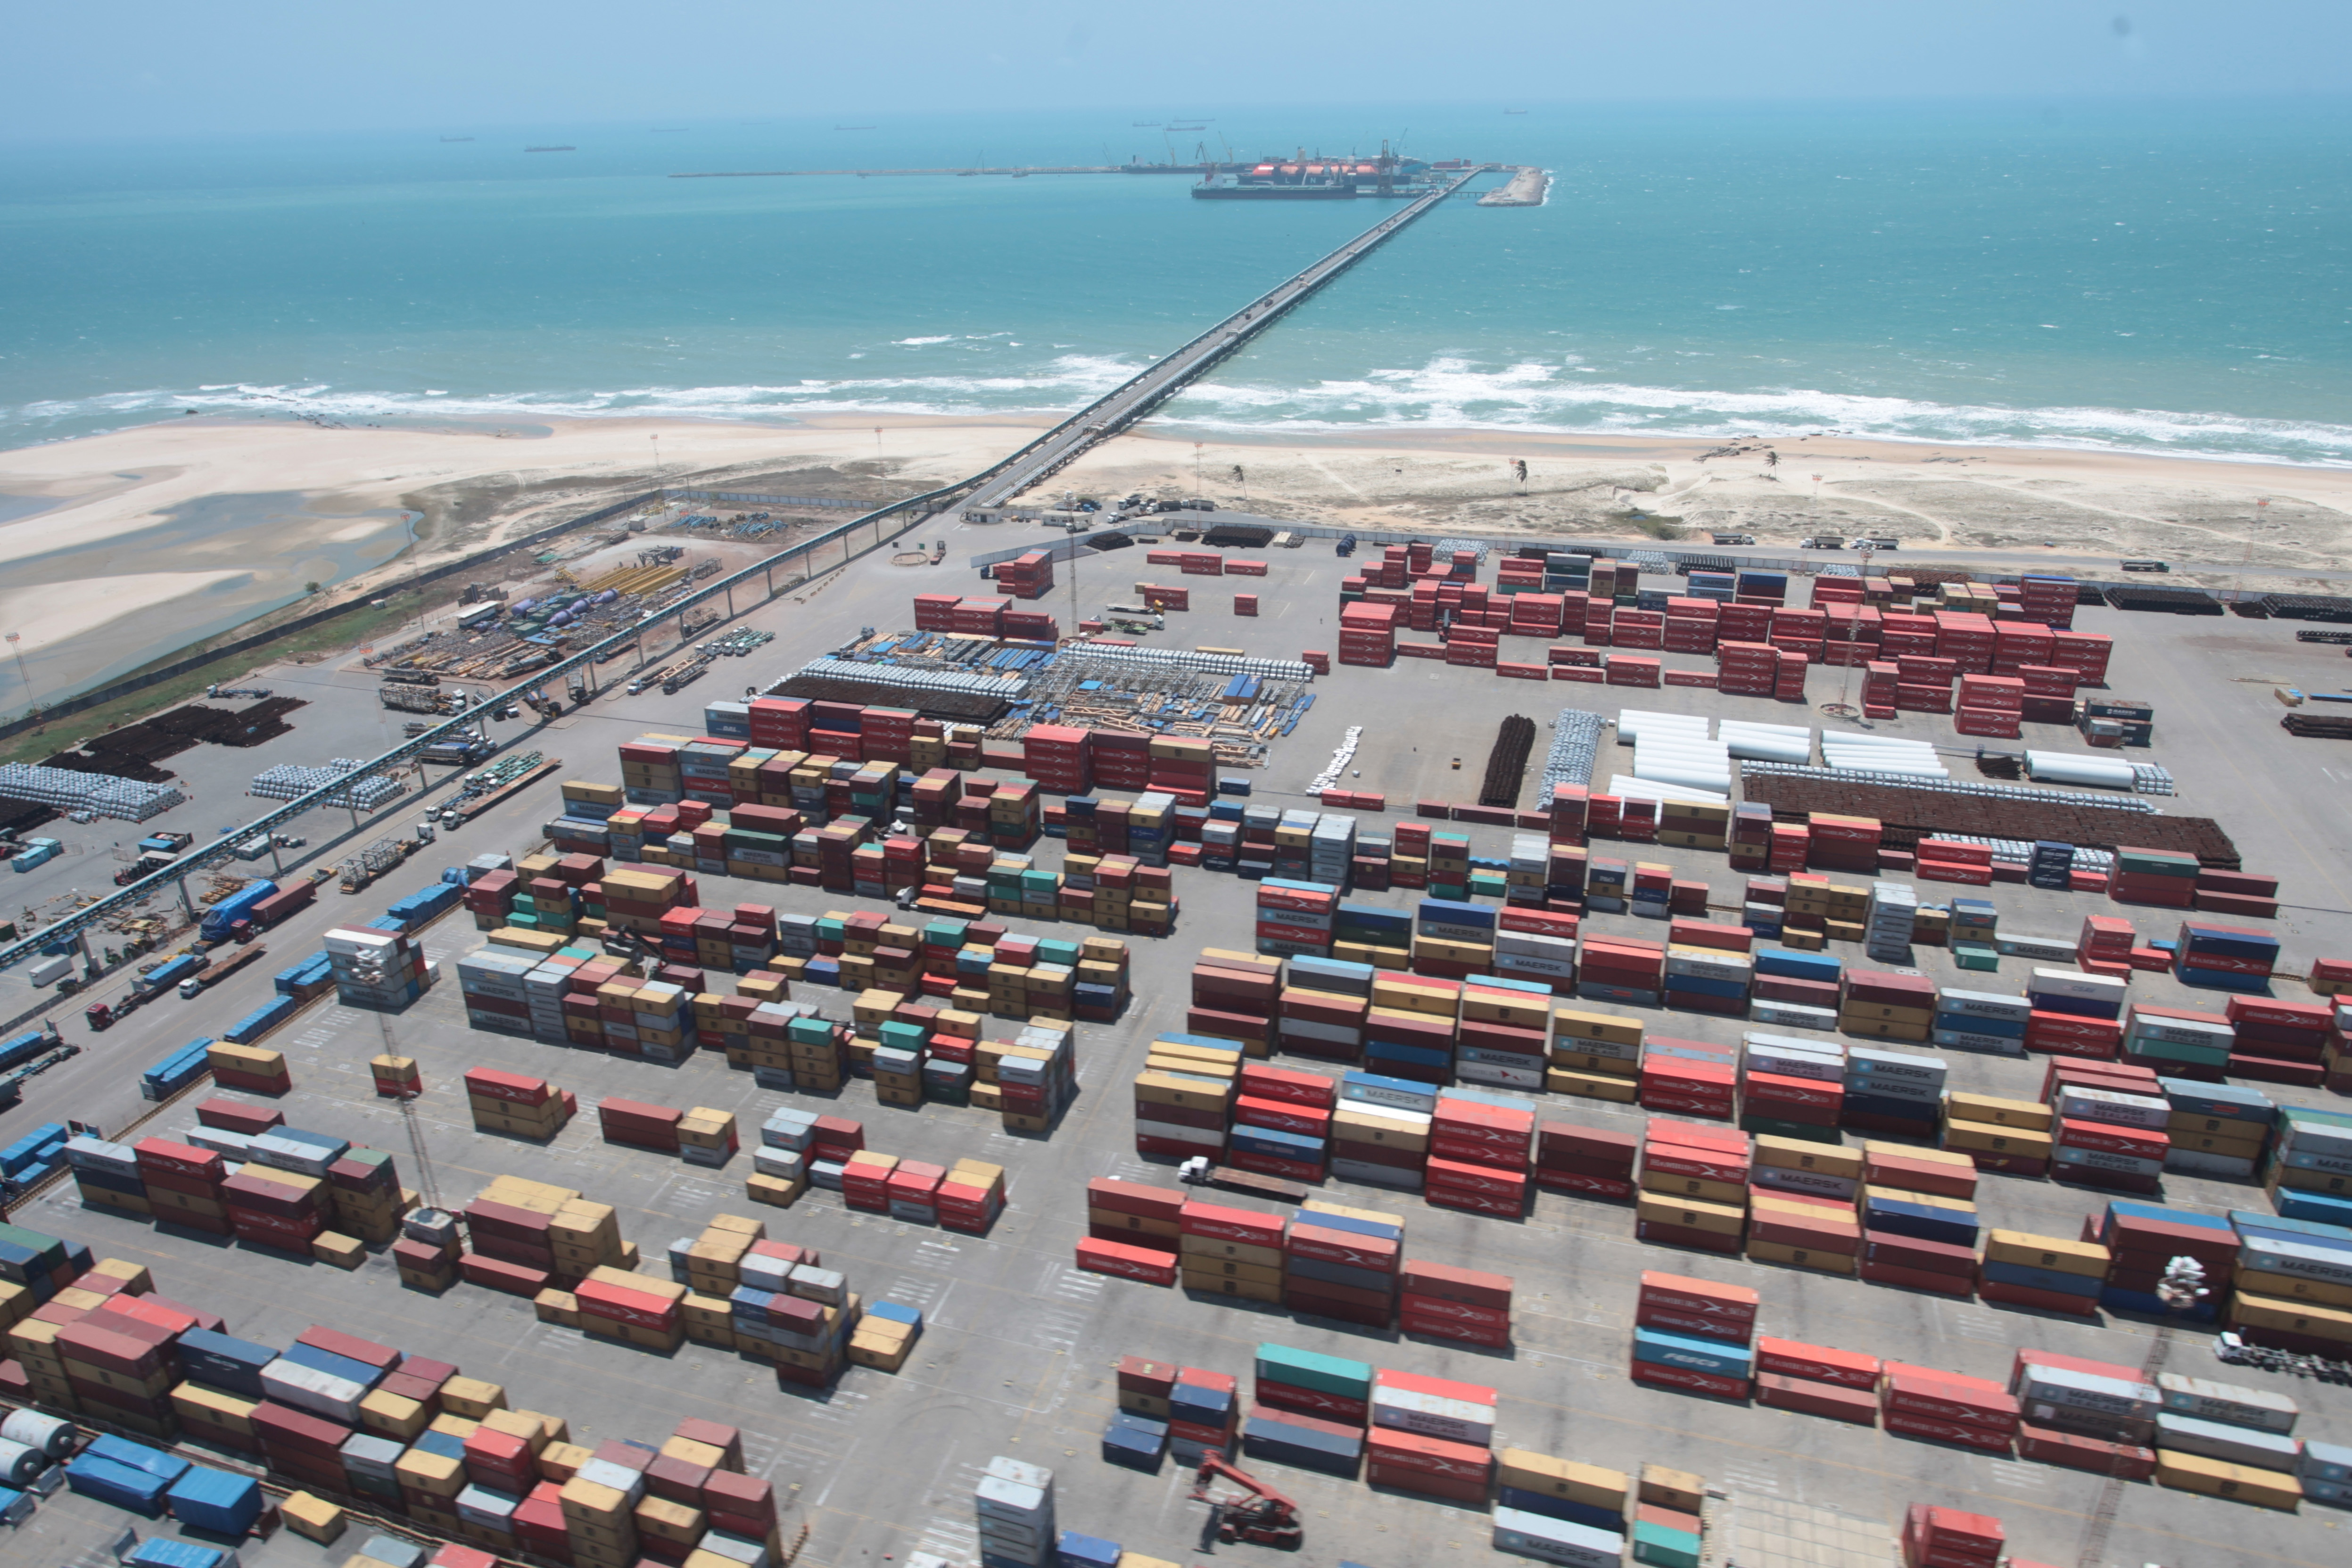 O Porto do Pecém atingiu a marca de 2 milhões de placas de aço exportadas em 2017. O material produzido pela Companhia Siderúrgica do Pecém (CSP) é a principal carga de exportação em toneladas no Porto do Pecém.